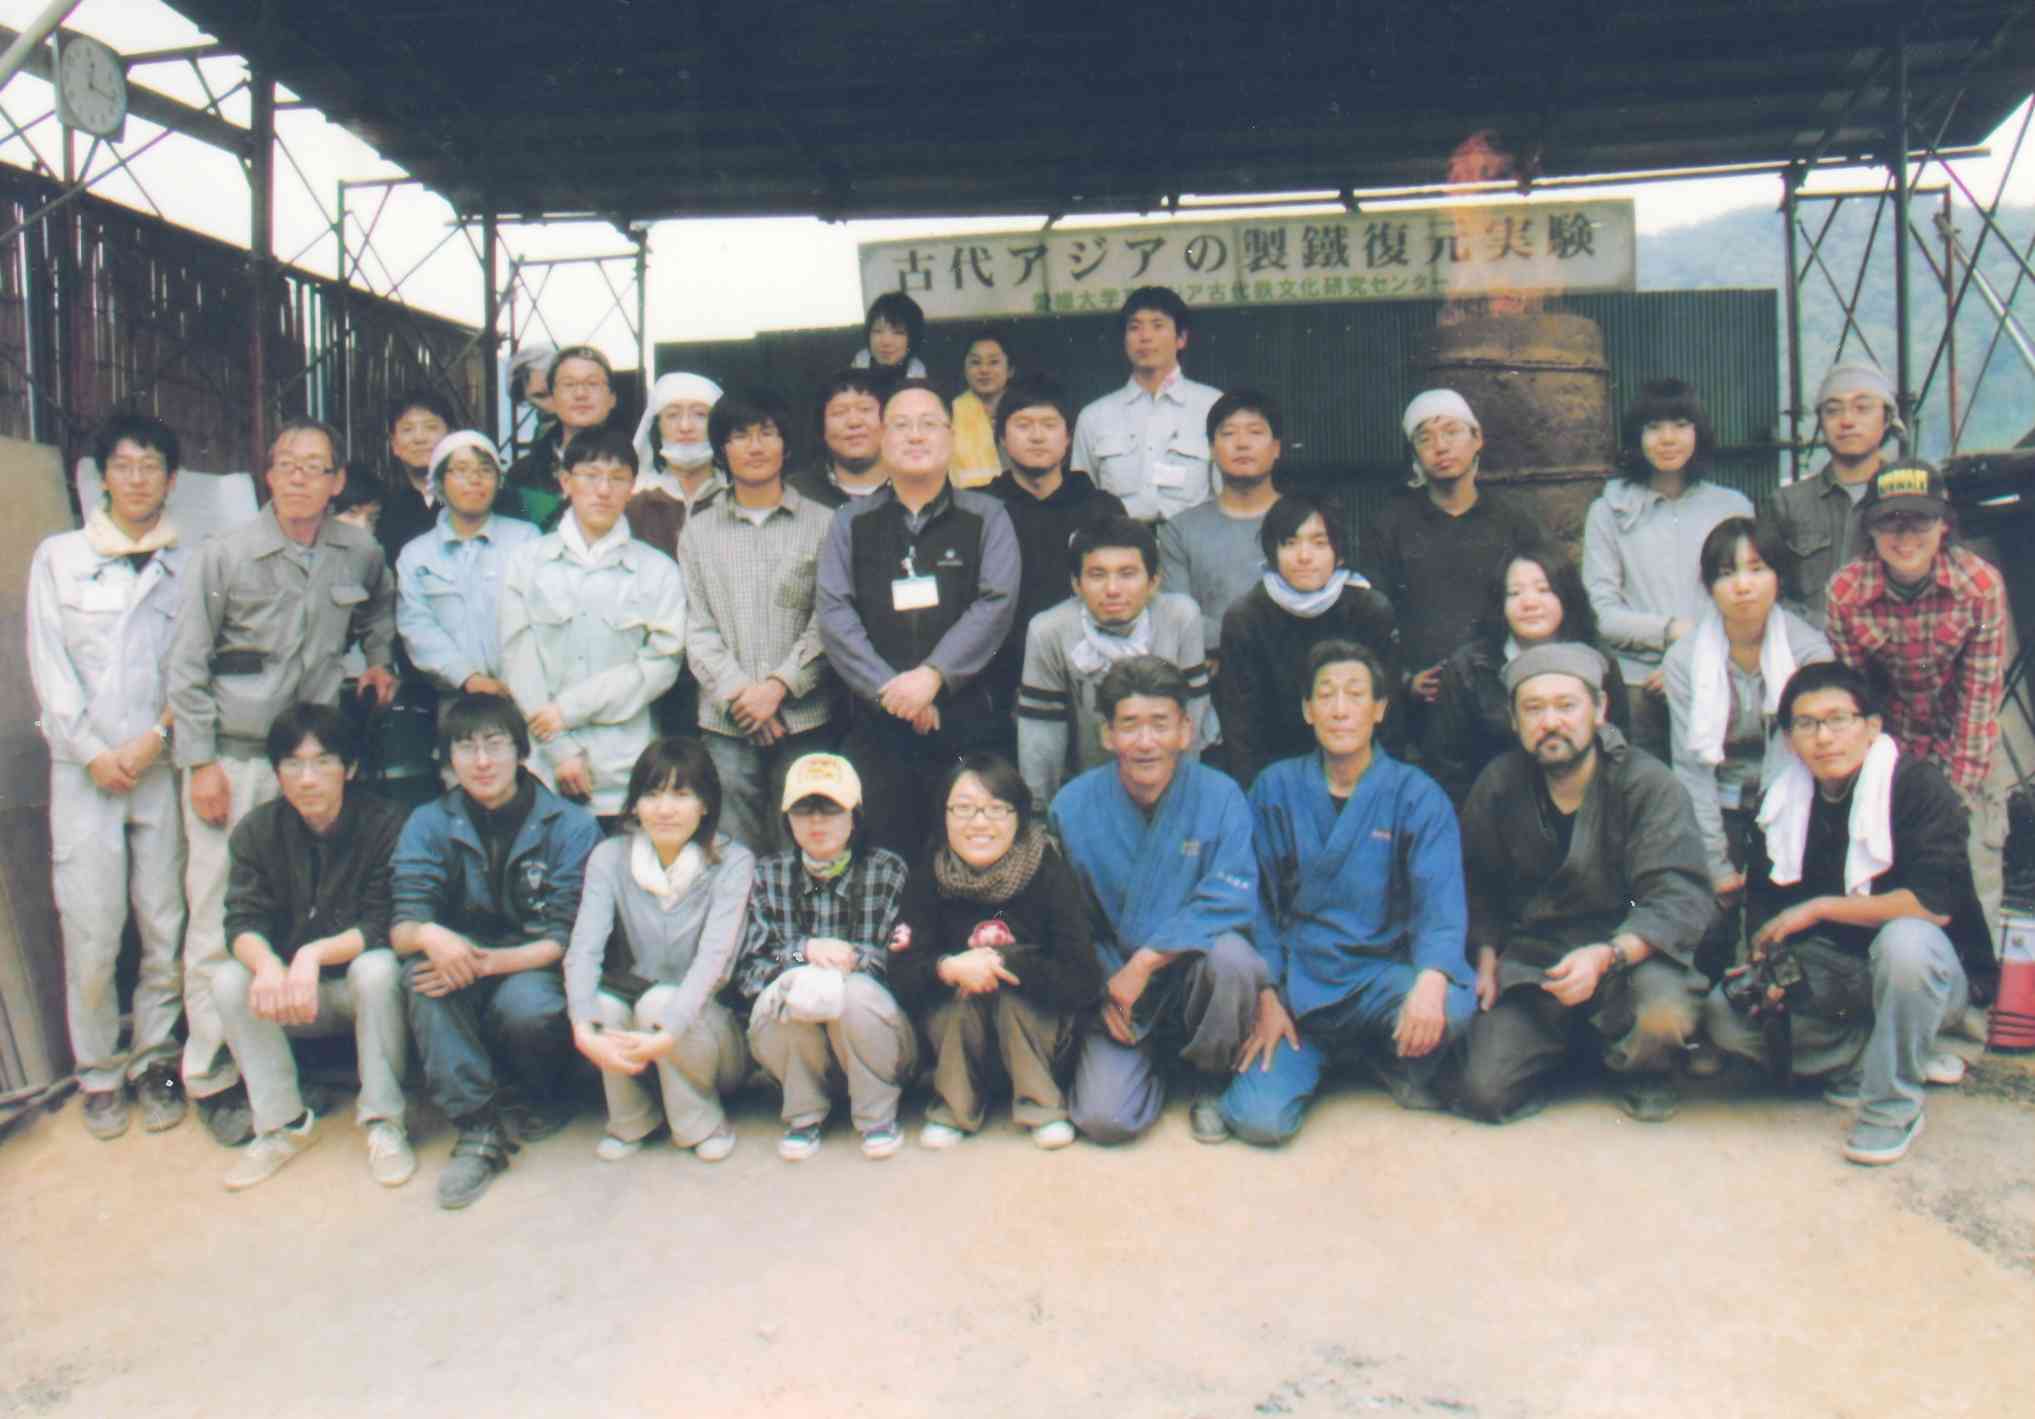 新見・中世たたら実験場に集った日韓の若者たちと。前列右から3番目が木原明村下、その左が新見庄たたら伝承会の藤井勲さん